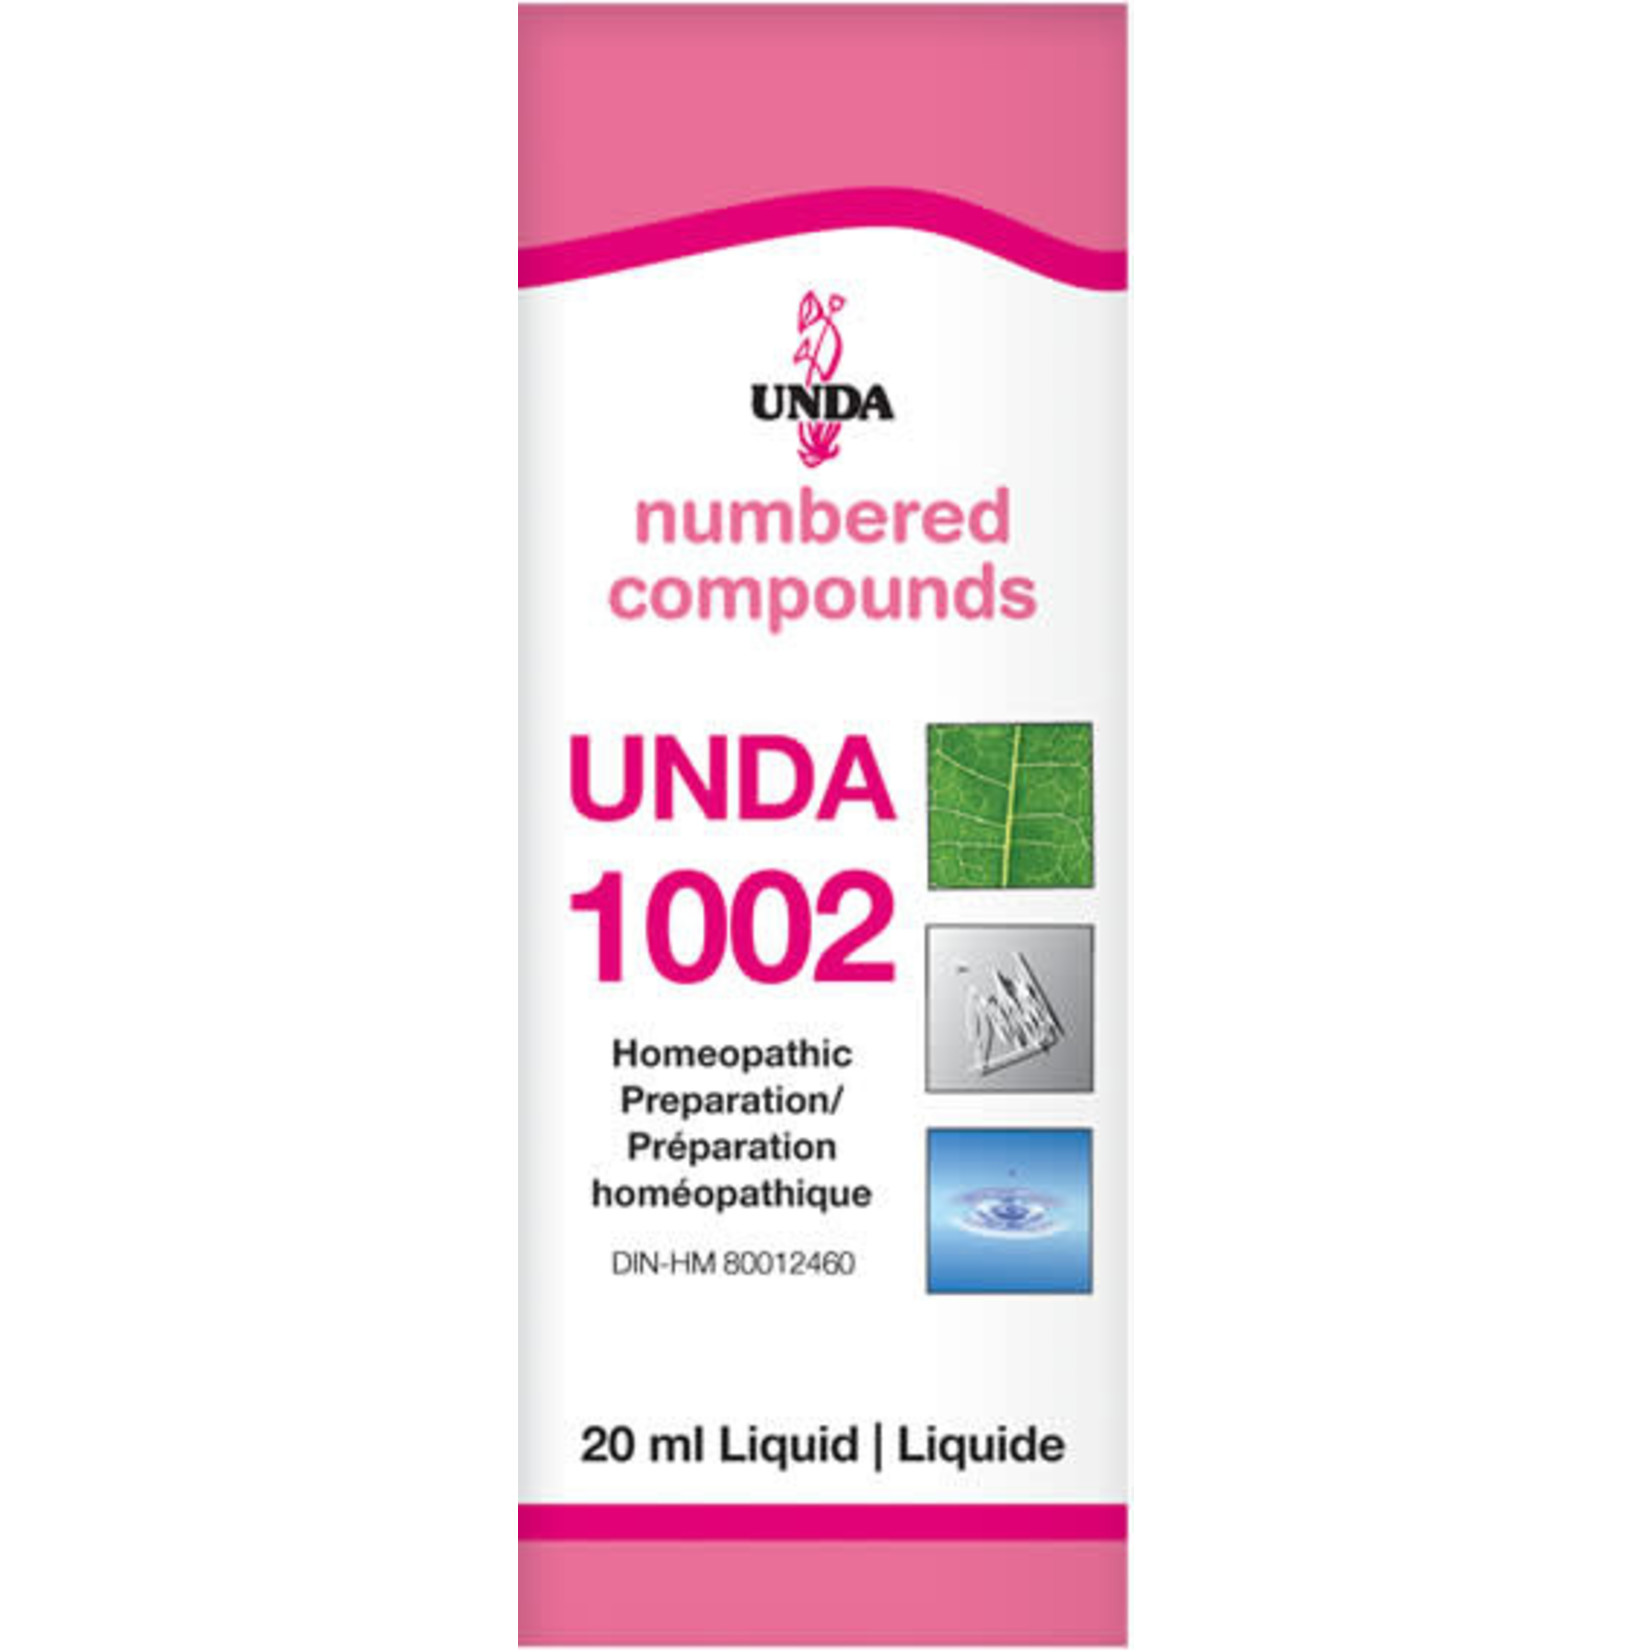 UNDA UNDA 1002